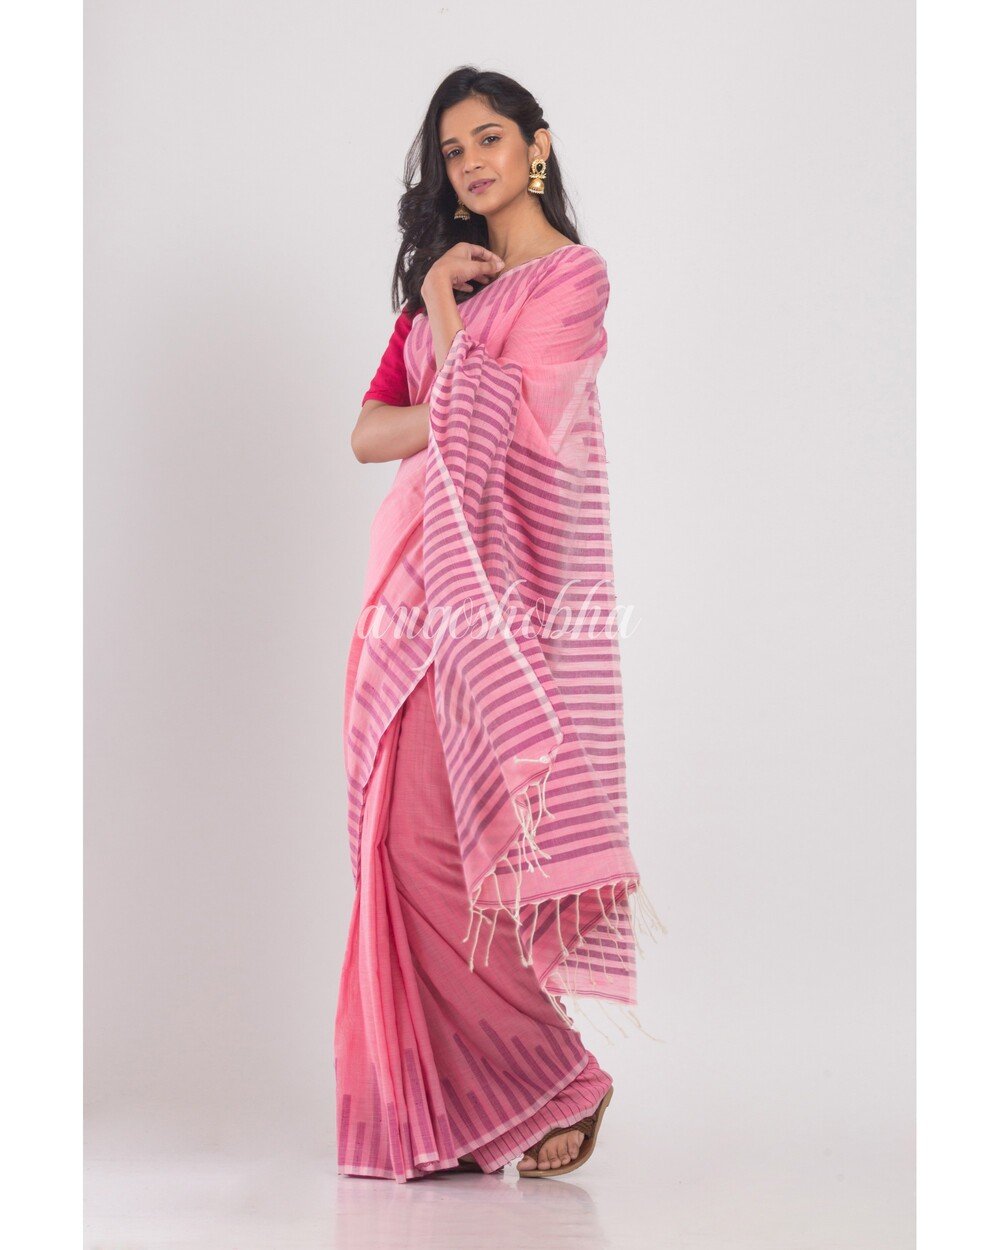 Women's Pink Temple Border Cotton Saree - Angoshobha